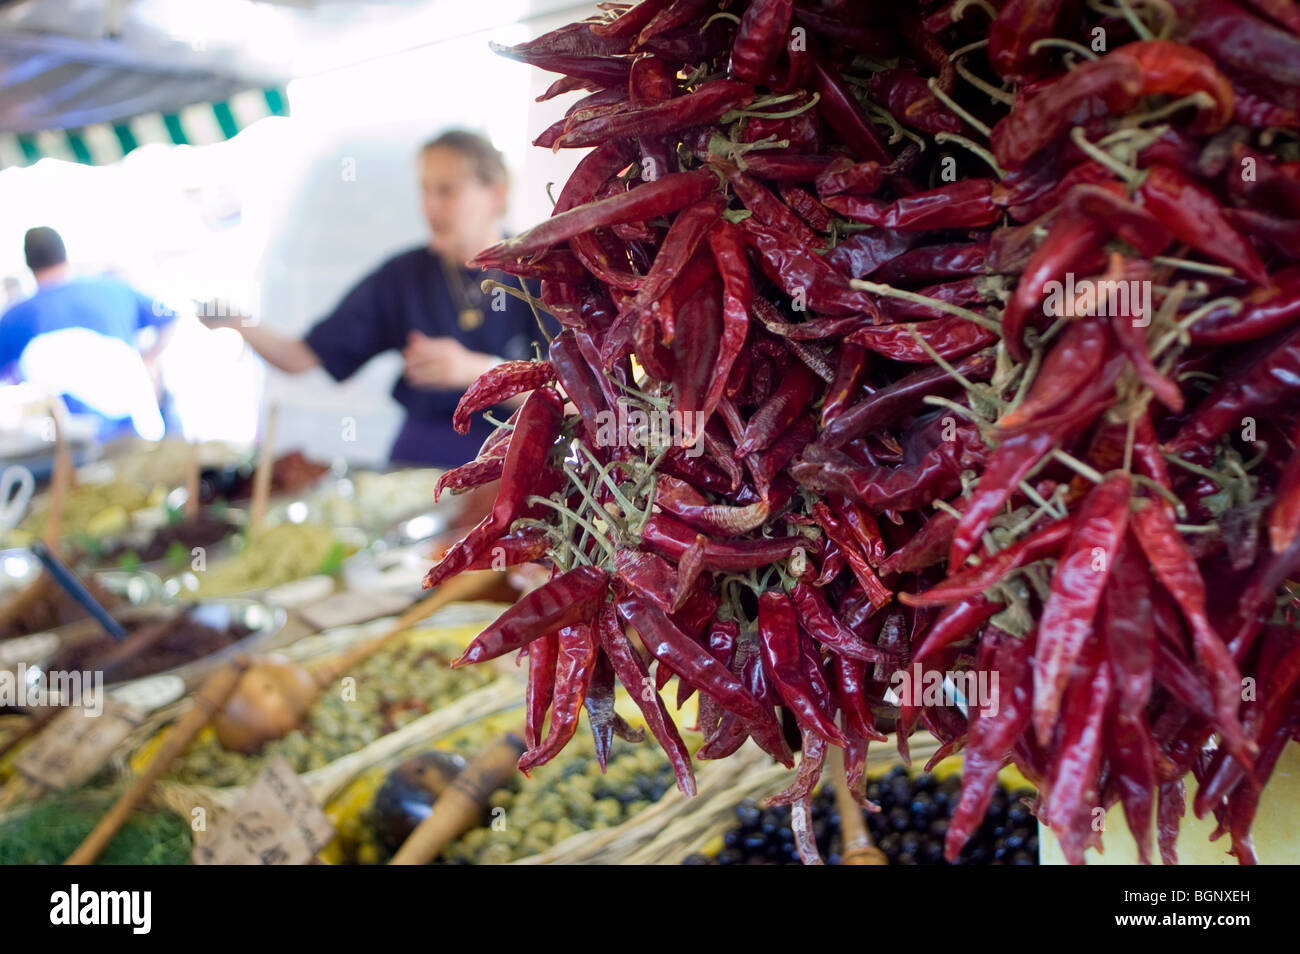 Arles, France - détail, de l'alimentation, les pigments pour vendre à l'extérieur, marché des producteurs, en Provence, vendeur de rue Banque D'Images